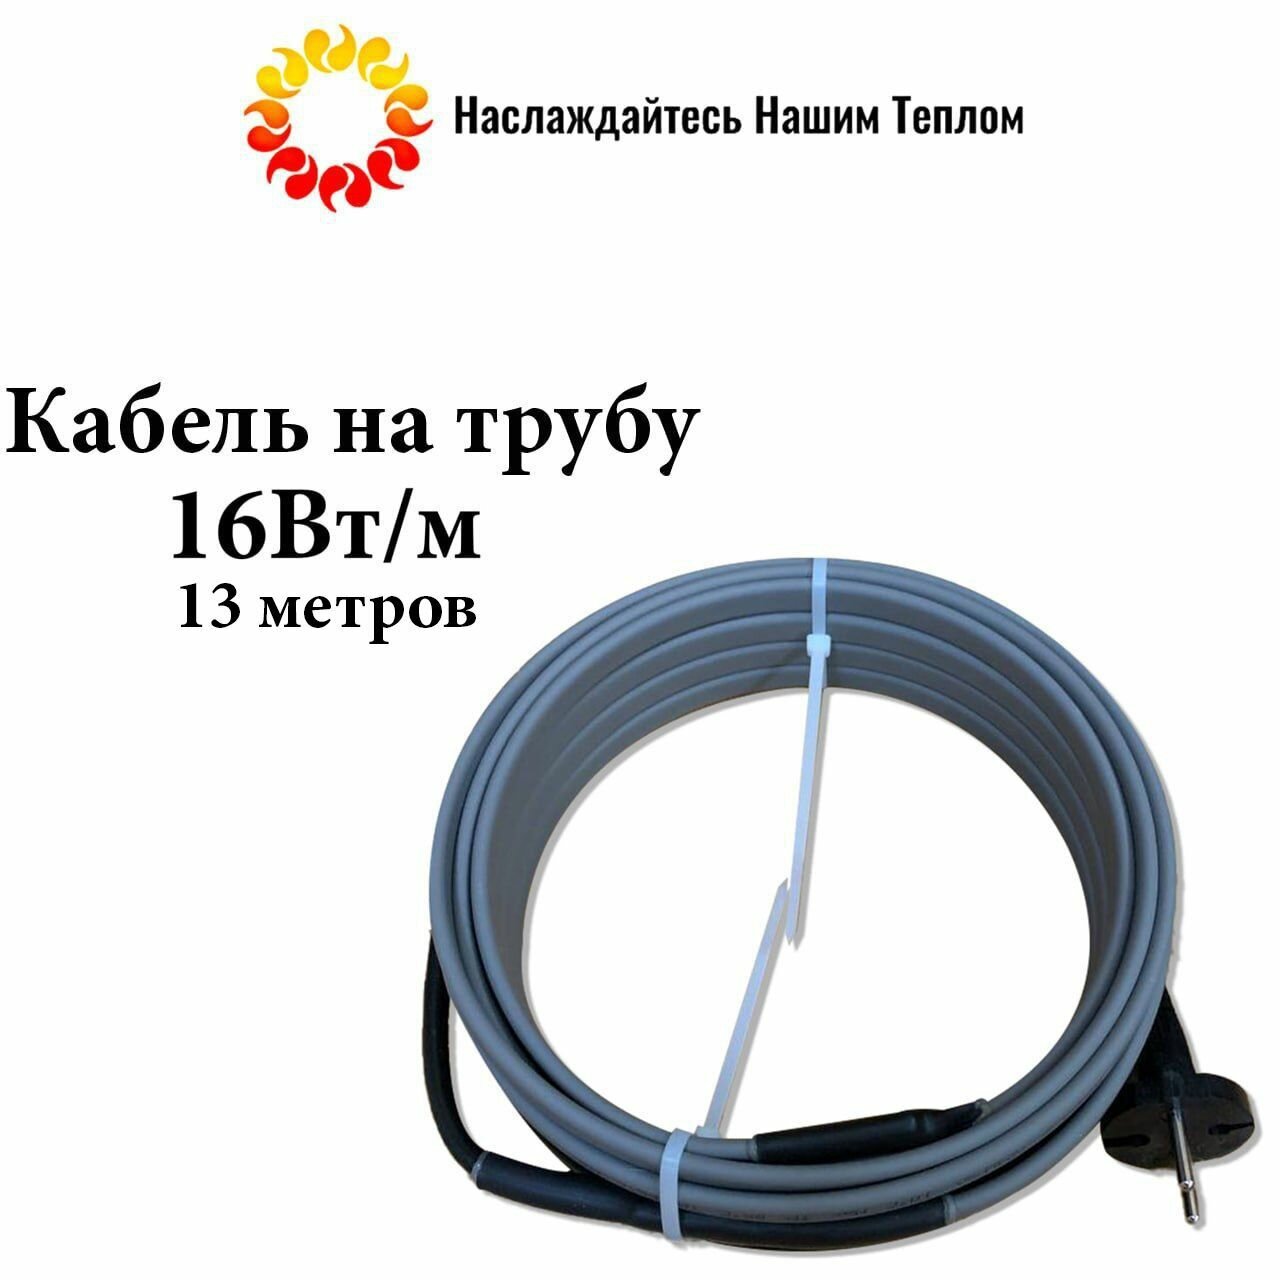 Саморегулирующийся греющий кабель на трубу (наружный) для водопровода и канализации, 16 Вт/м, длина 13 метров